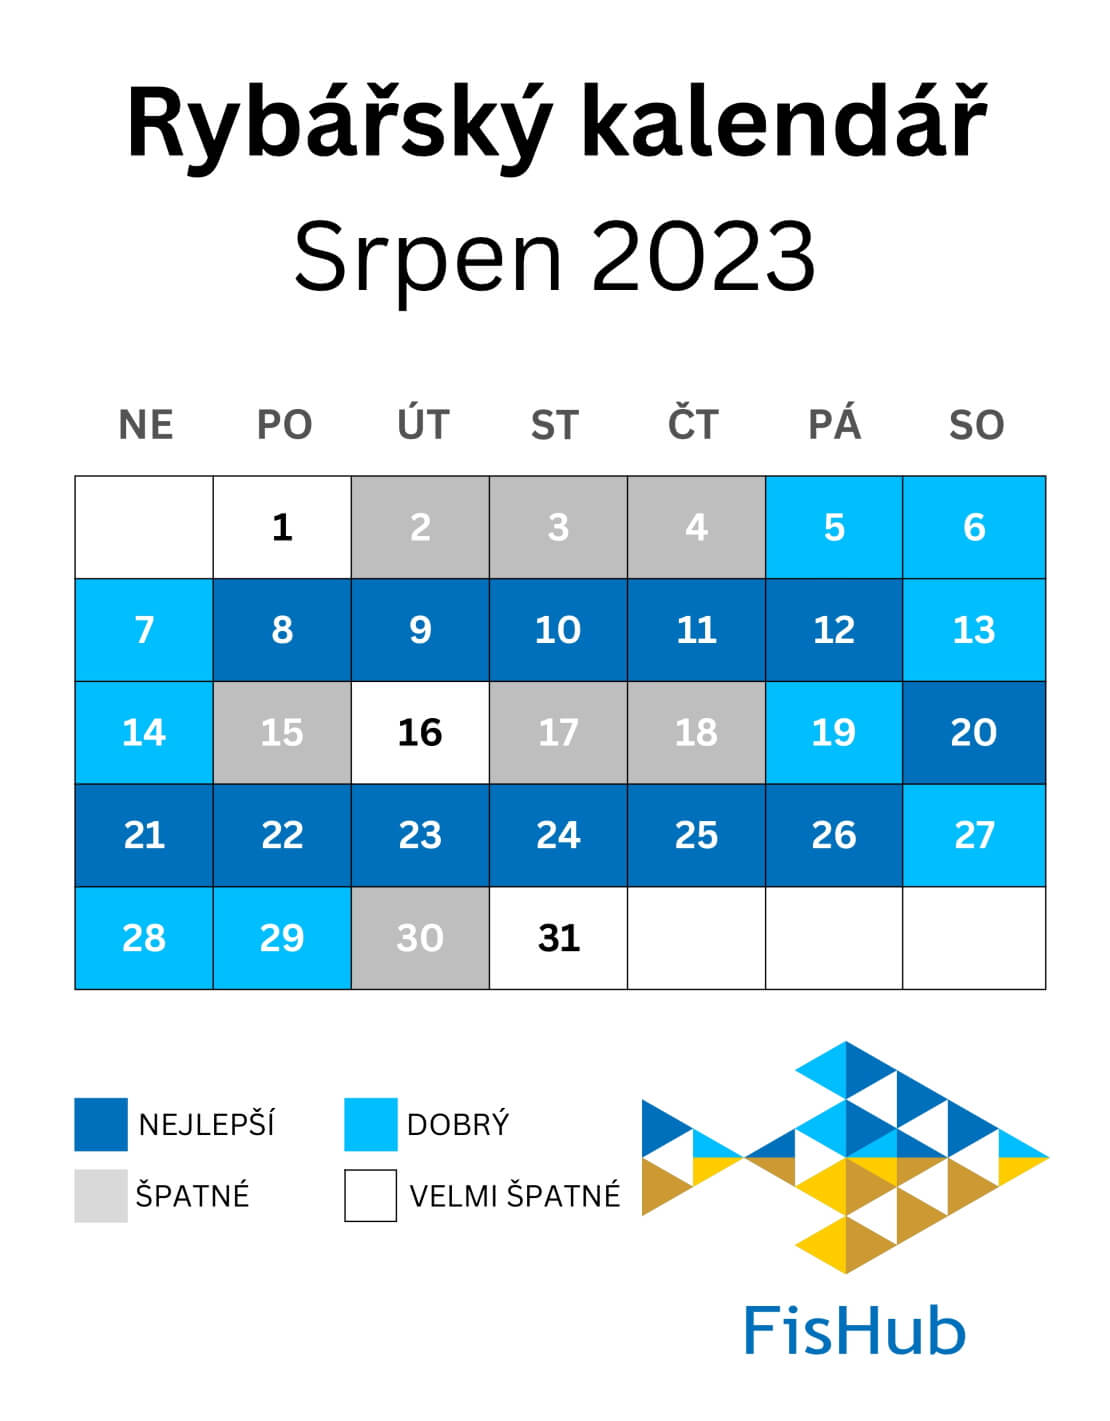 Rybářský kalendář na Srpen 2023